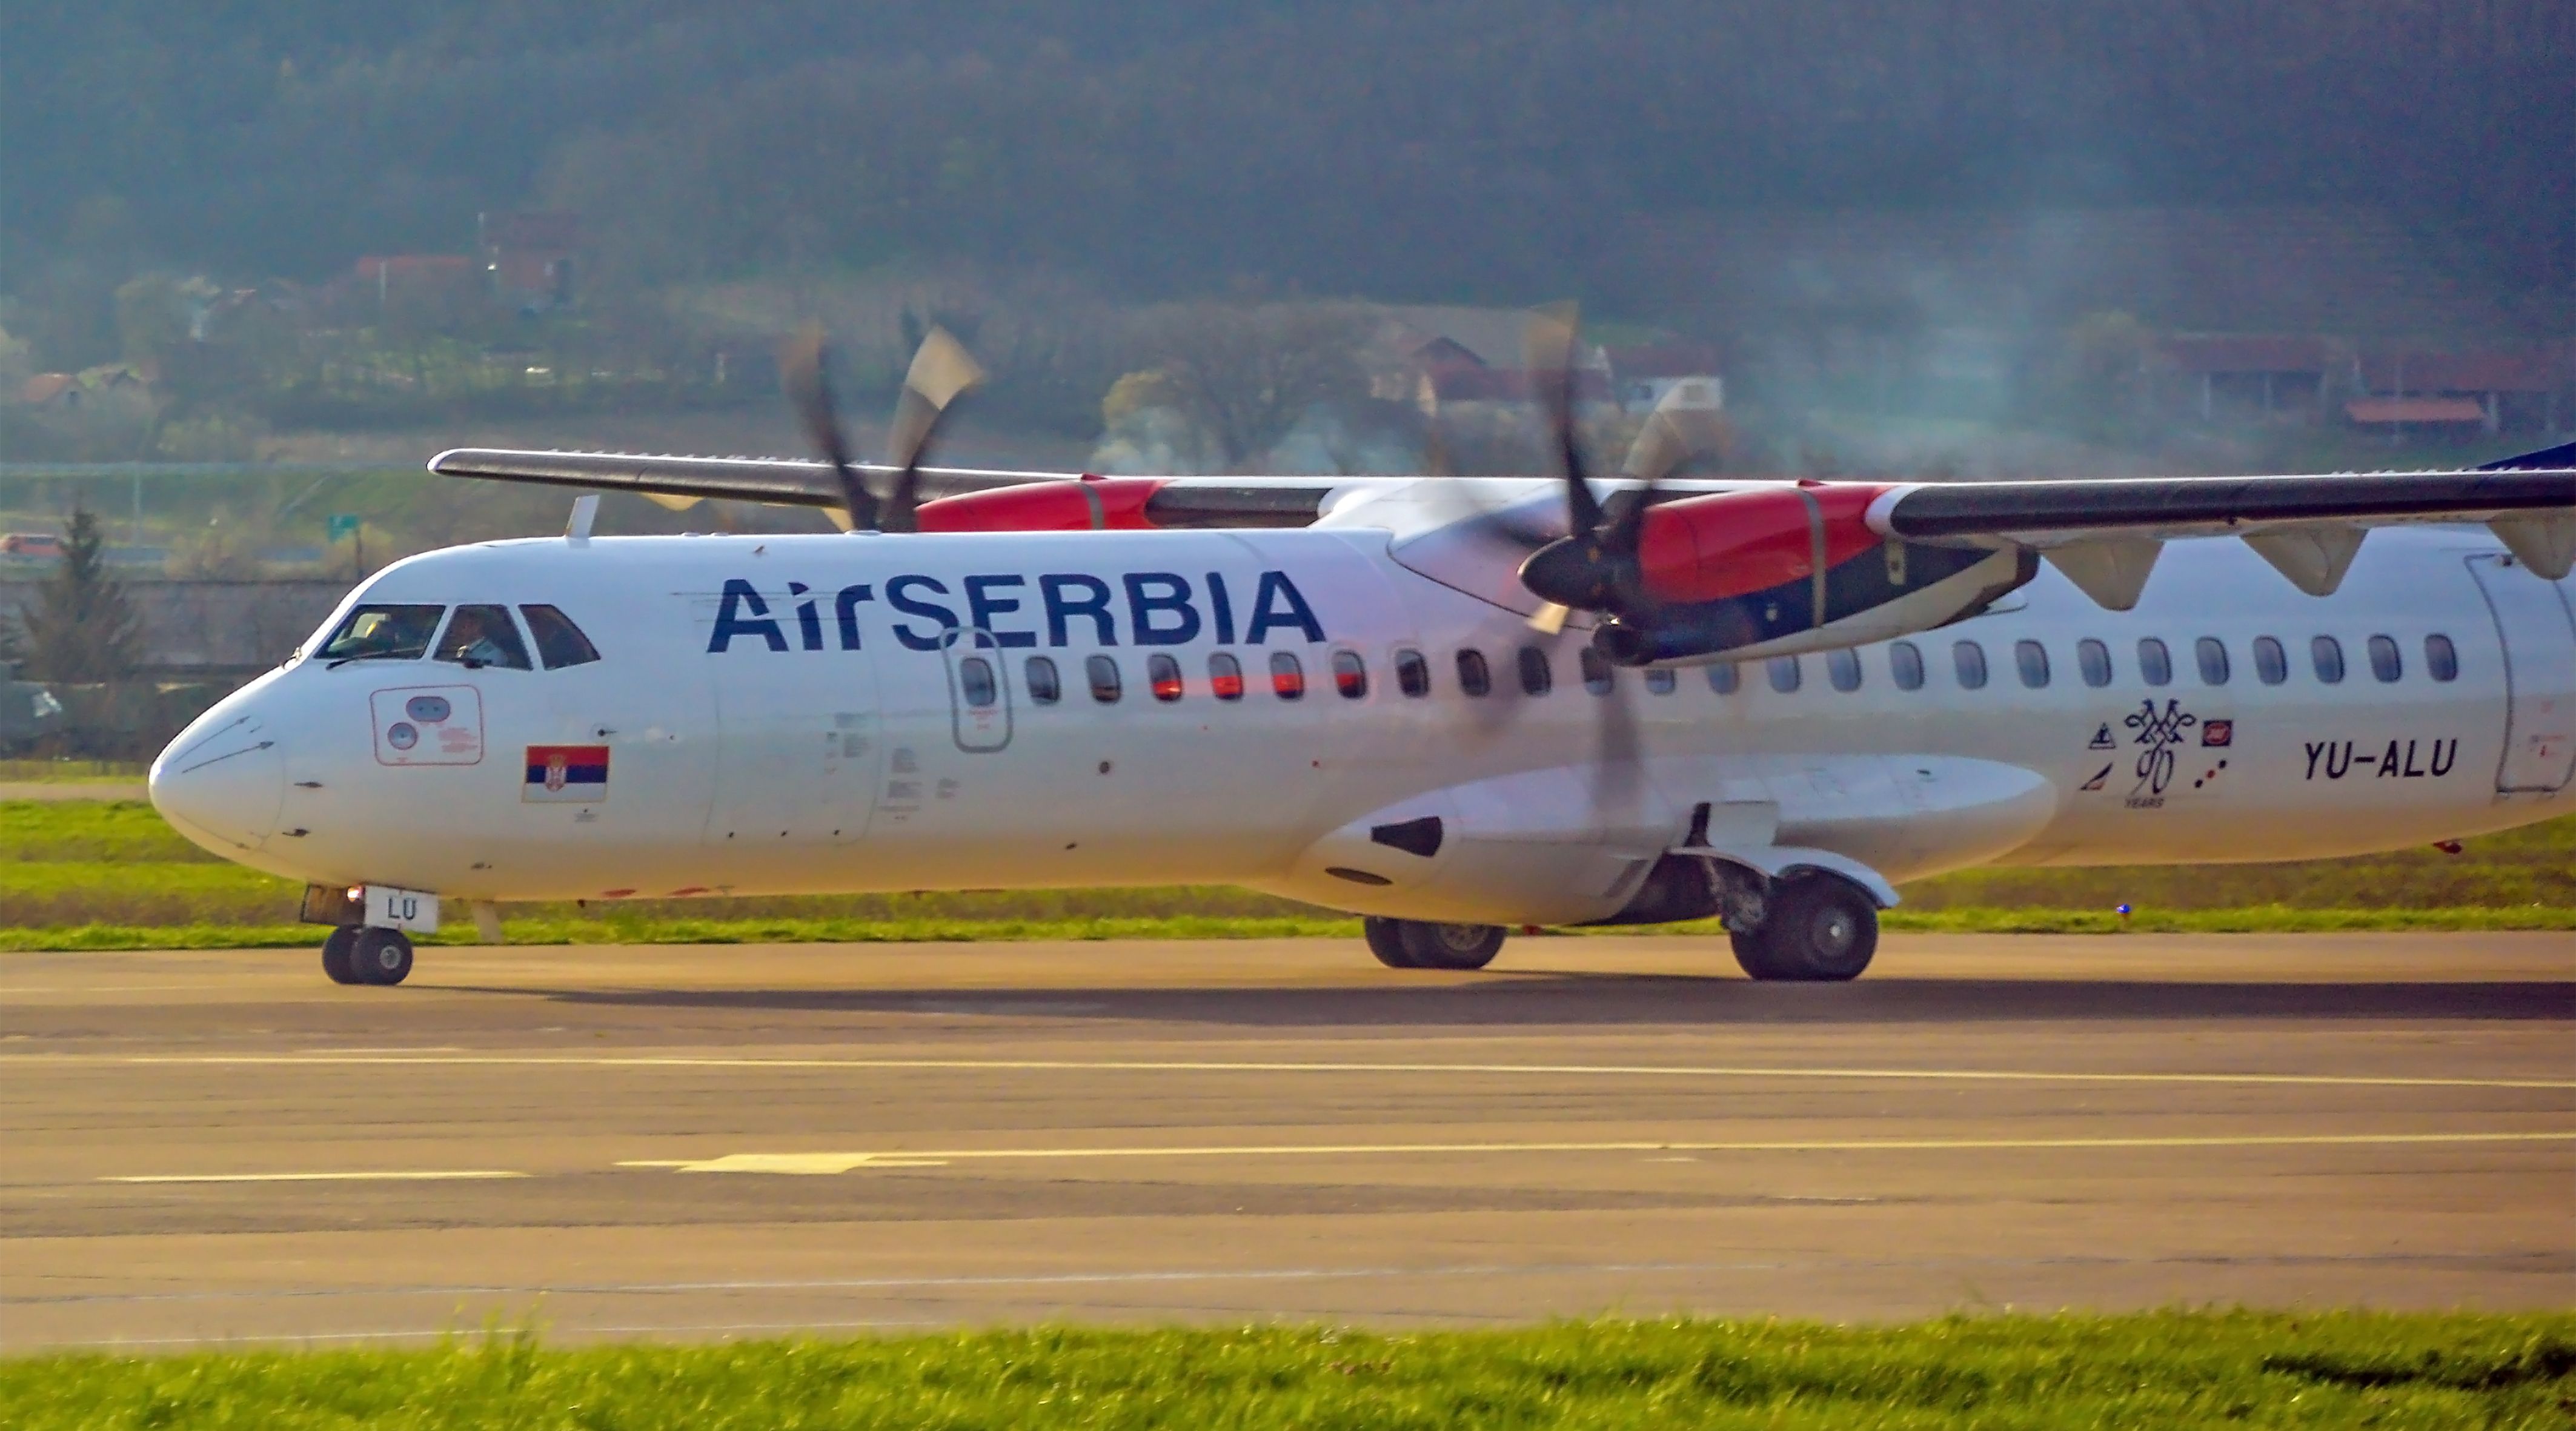 Air Serbia ATR 72-200 (YU-ALU) landing on Banja Luka International Airport